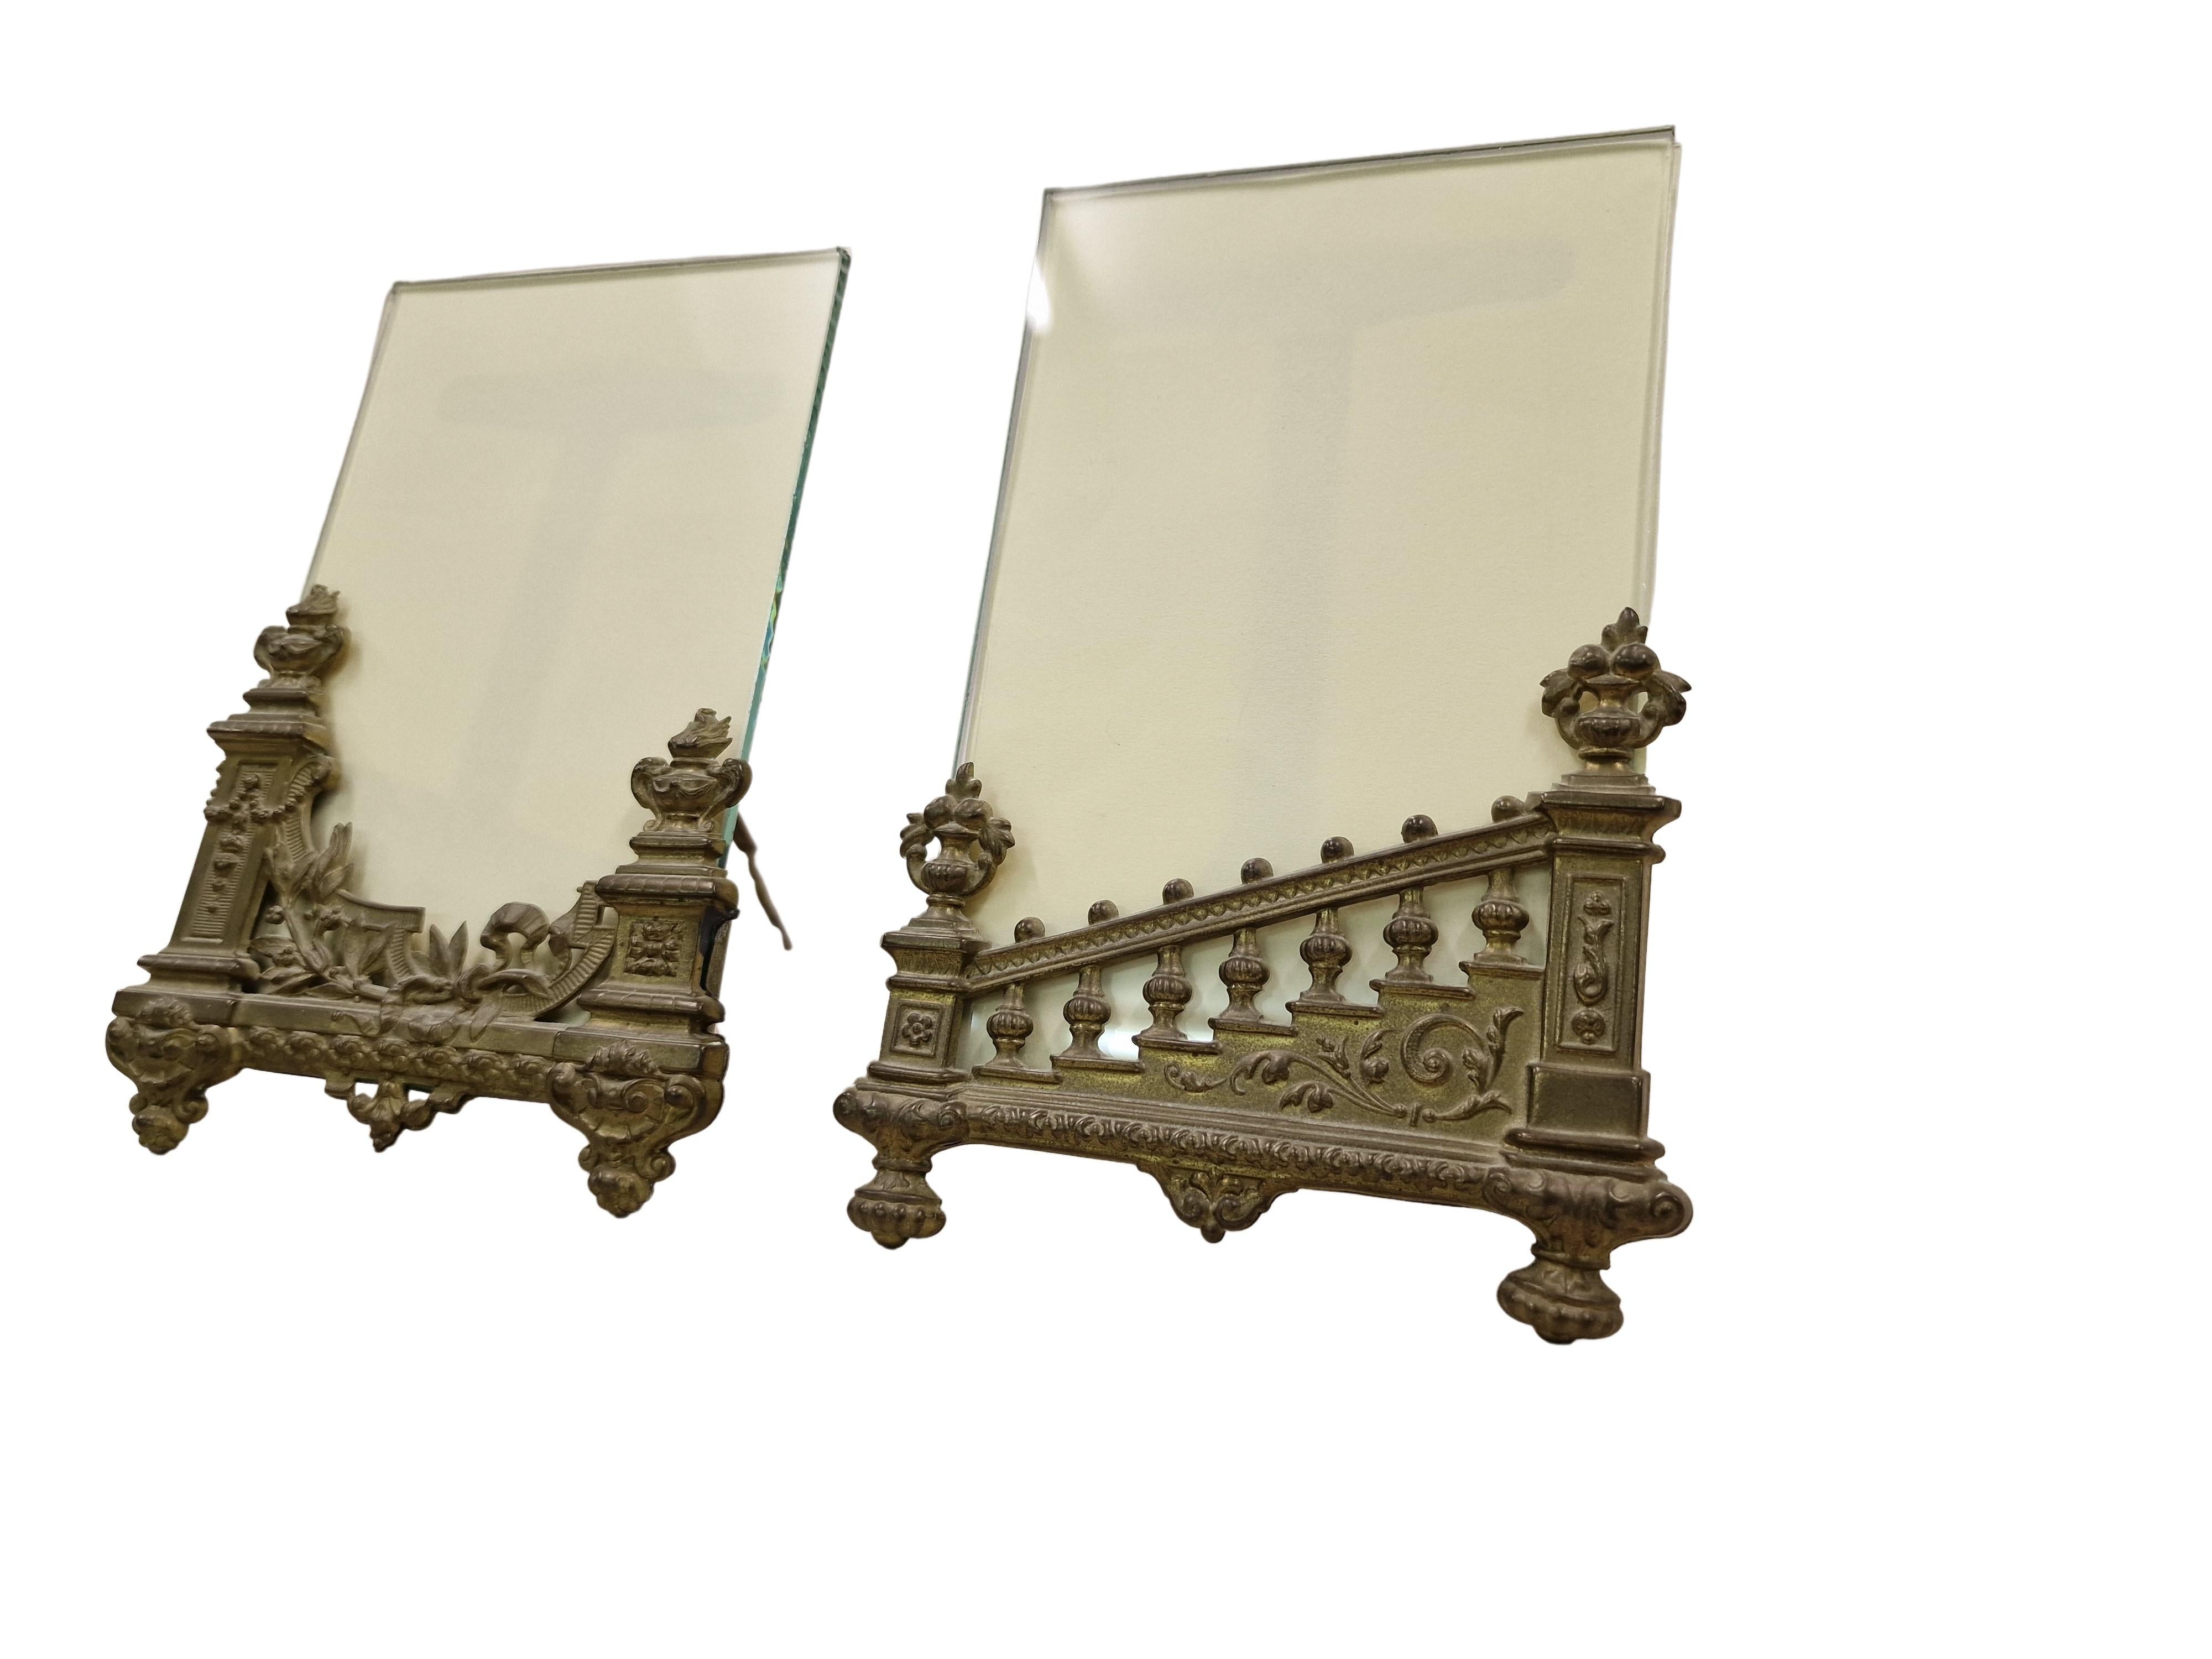 Wunderschönes Paar seltener Stand-/Tischgestelle, hergestellt um 1890. 
Die Konstruktion besteht aus Messing, in das eine Glasplatte eingesetzt ist, dazwischen ist Platz für das von Ihnen gewählte Bild.

Die Konstruktion der Rahmen ist